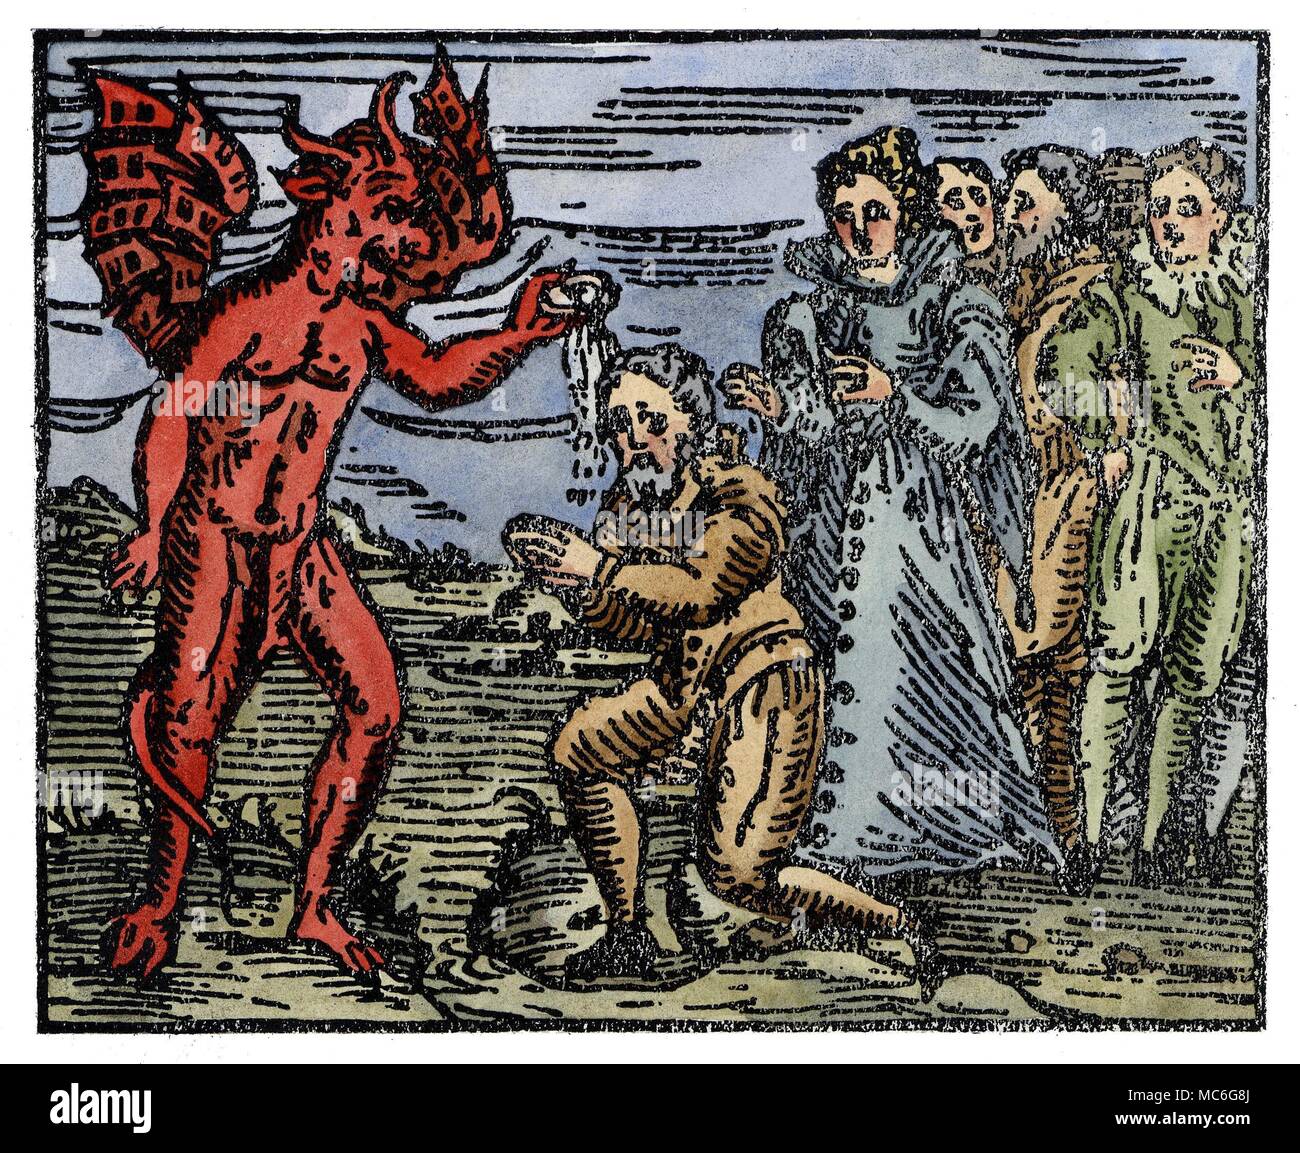 La sorcellerie - Démons la sorcière est baptisé par le diable, et au nom de l'enfer. Depuis la sorcière a renoncé à son nom chrétien, il est donné un autre par son nouveau propriétaire, le Diable. À la main, impression à partir de Francesco Maria Guazzo, Compendium Maleficarum, 1608. C'était le plus savant et précis de la sorcellerie médiévale des manuels, et à certains égards (parce qu'il a rendu hommage aux superstitions de la pire espèce) l'un des plus horrible. Banque D'Images